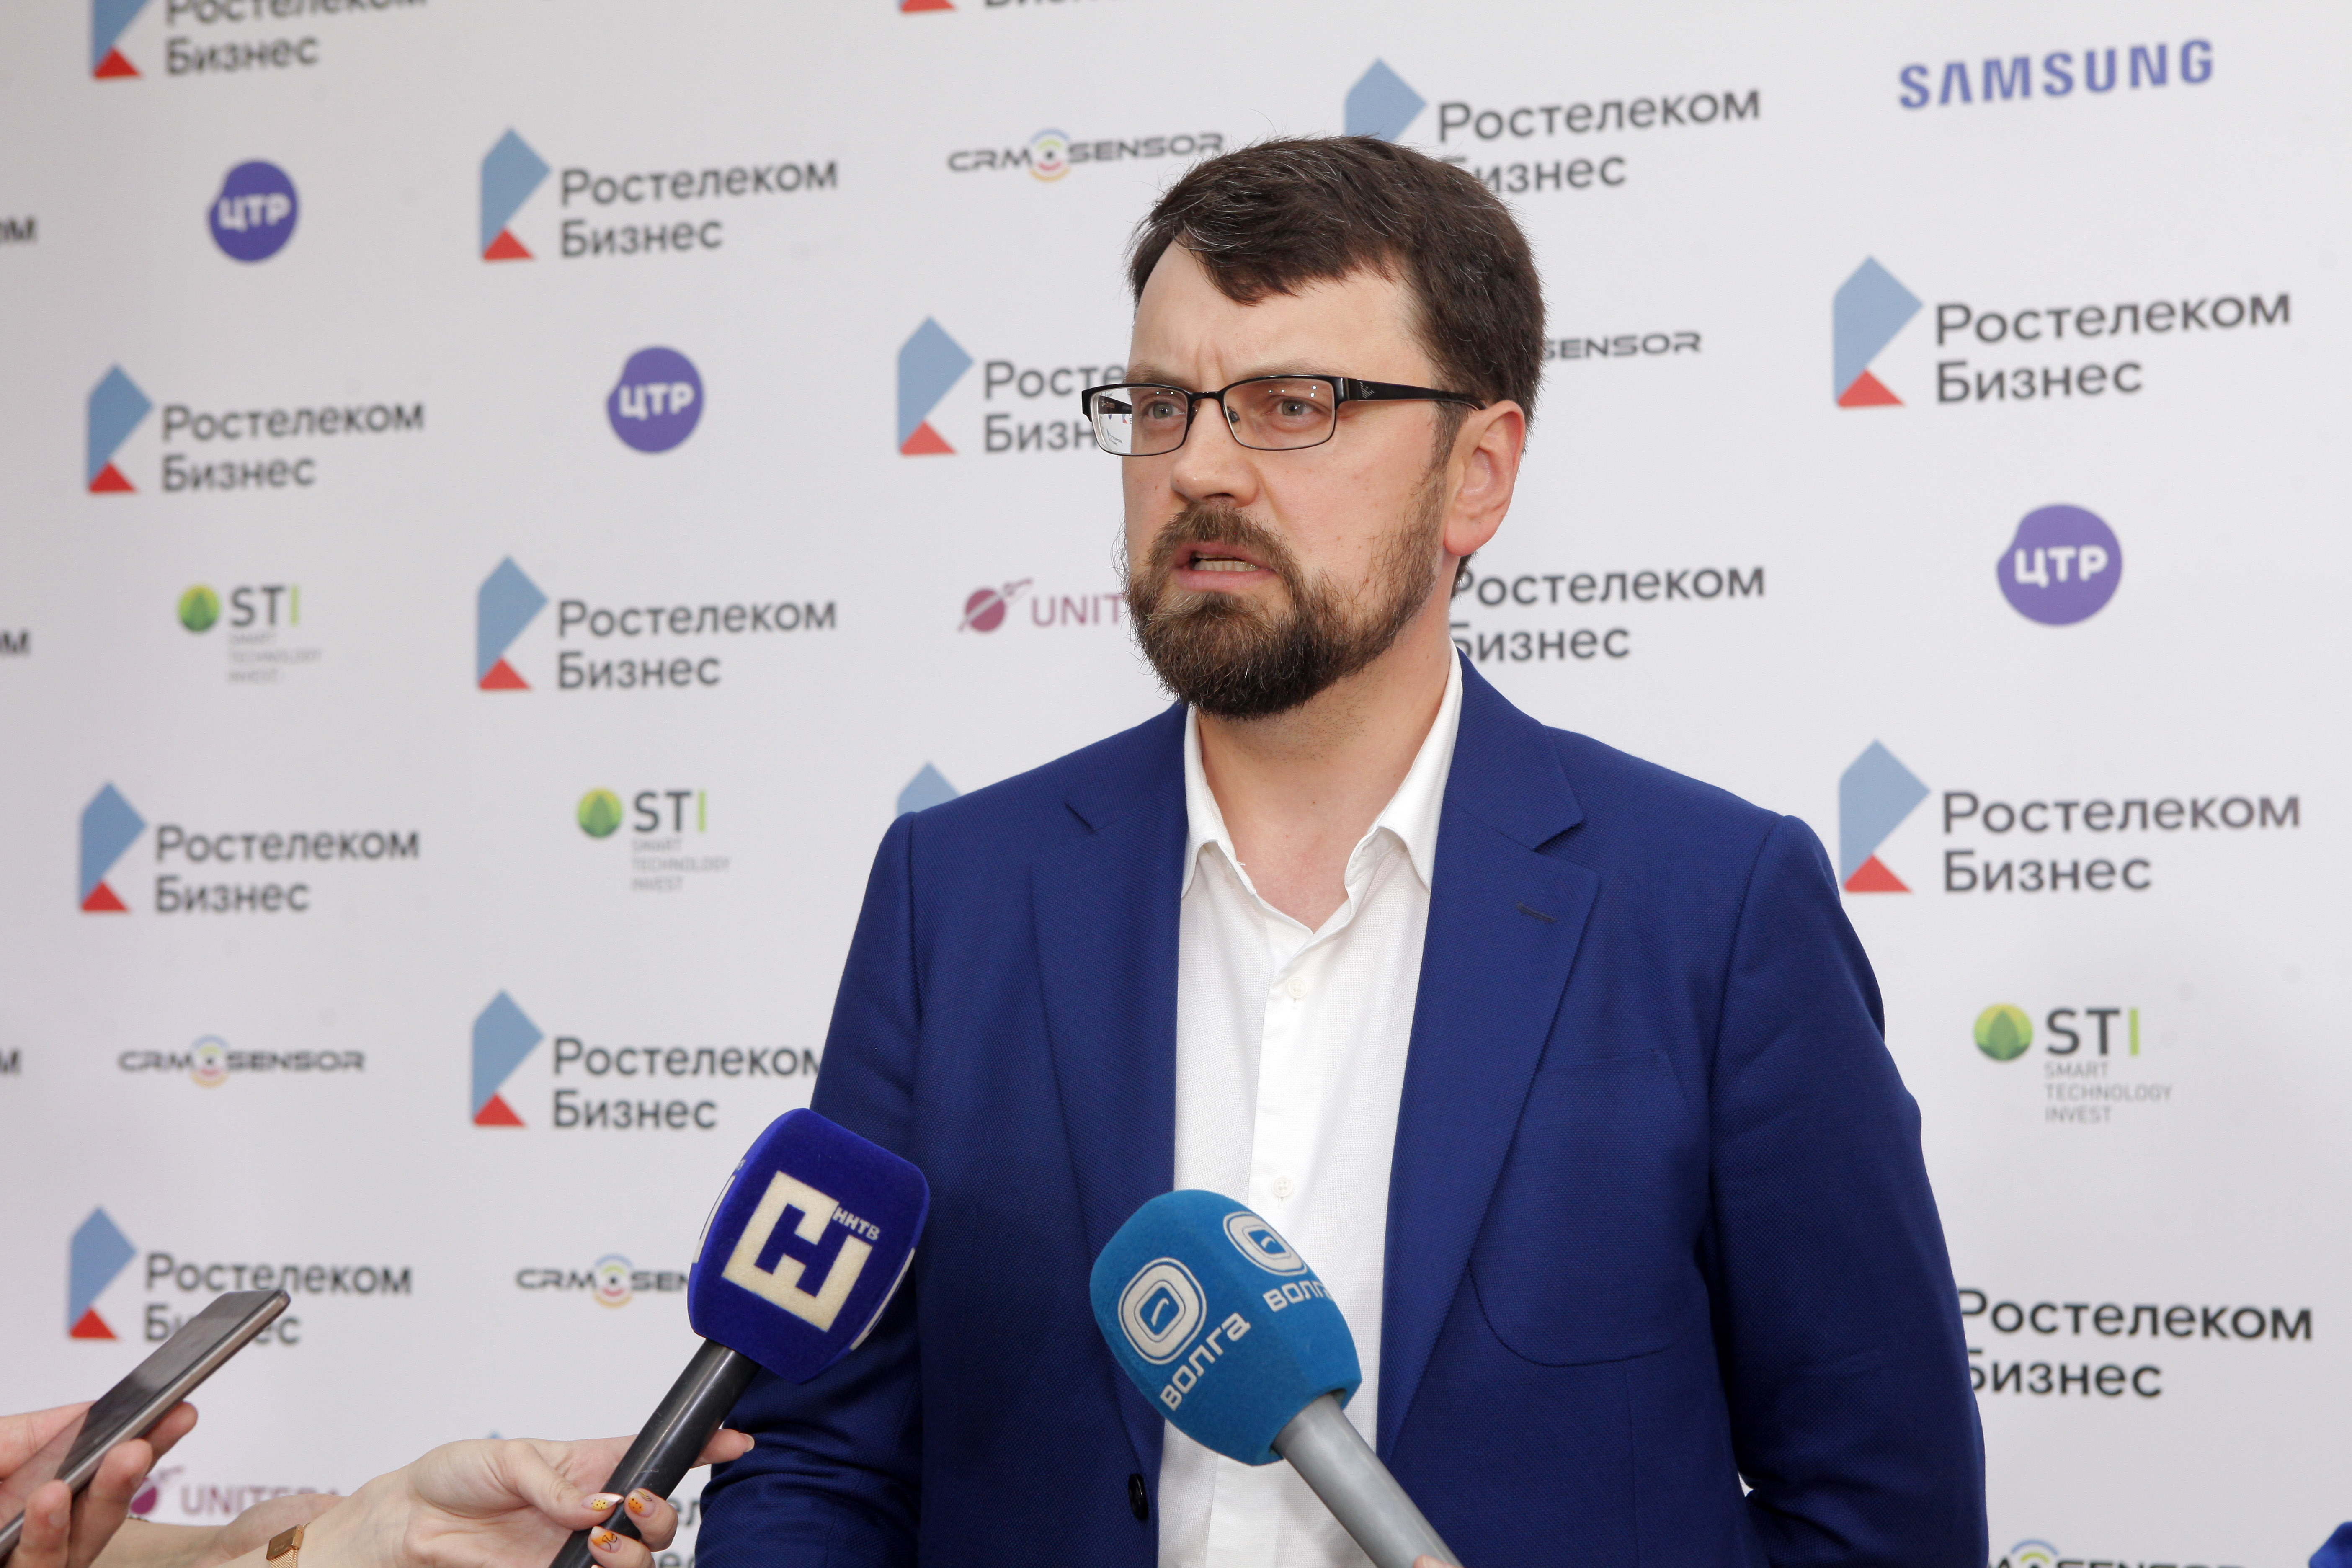 Цифровые сервисы "Ростелекома" в помощь нижегородскому бизнесу